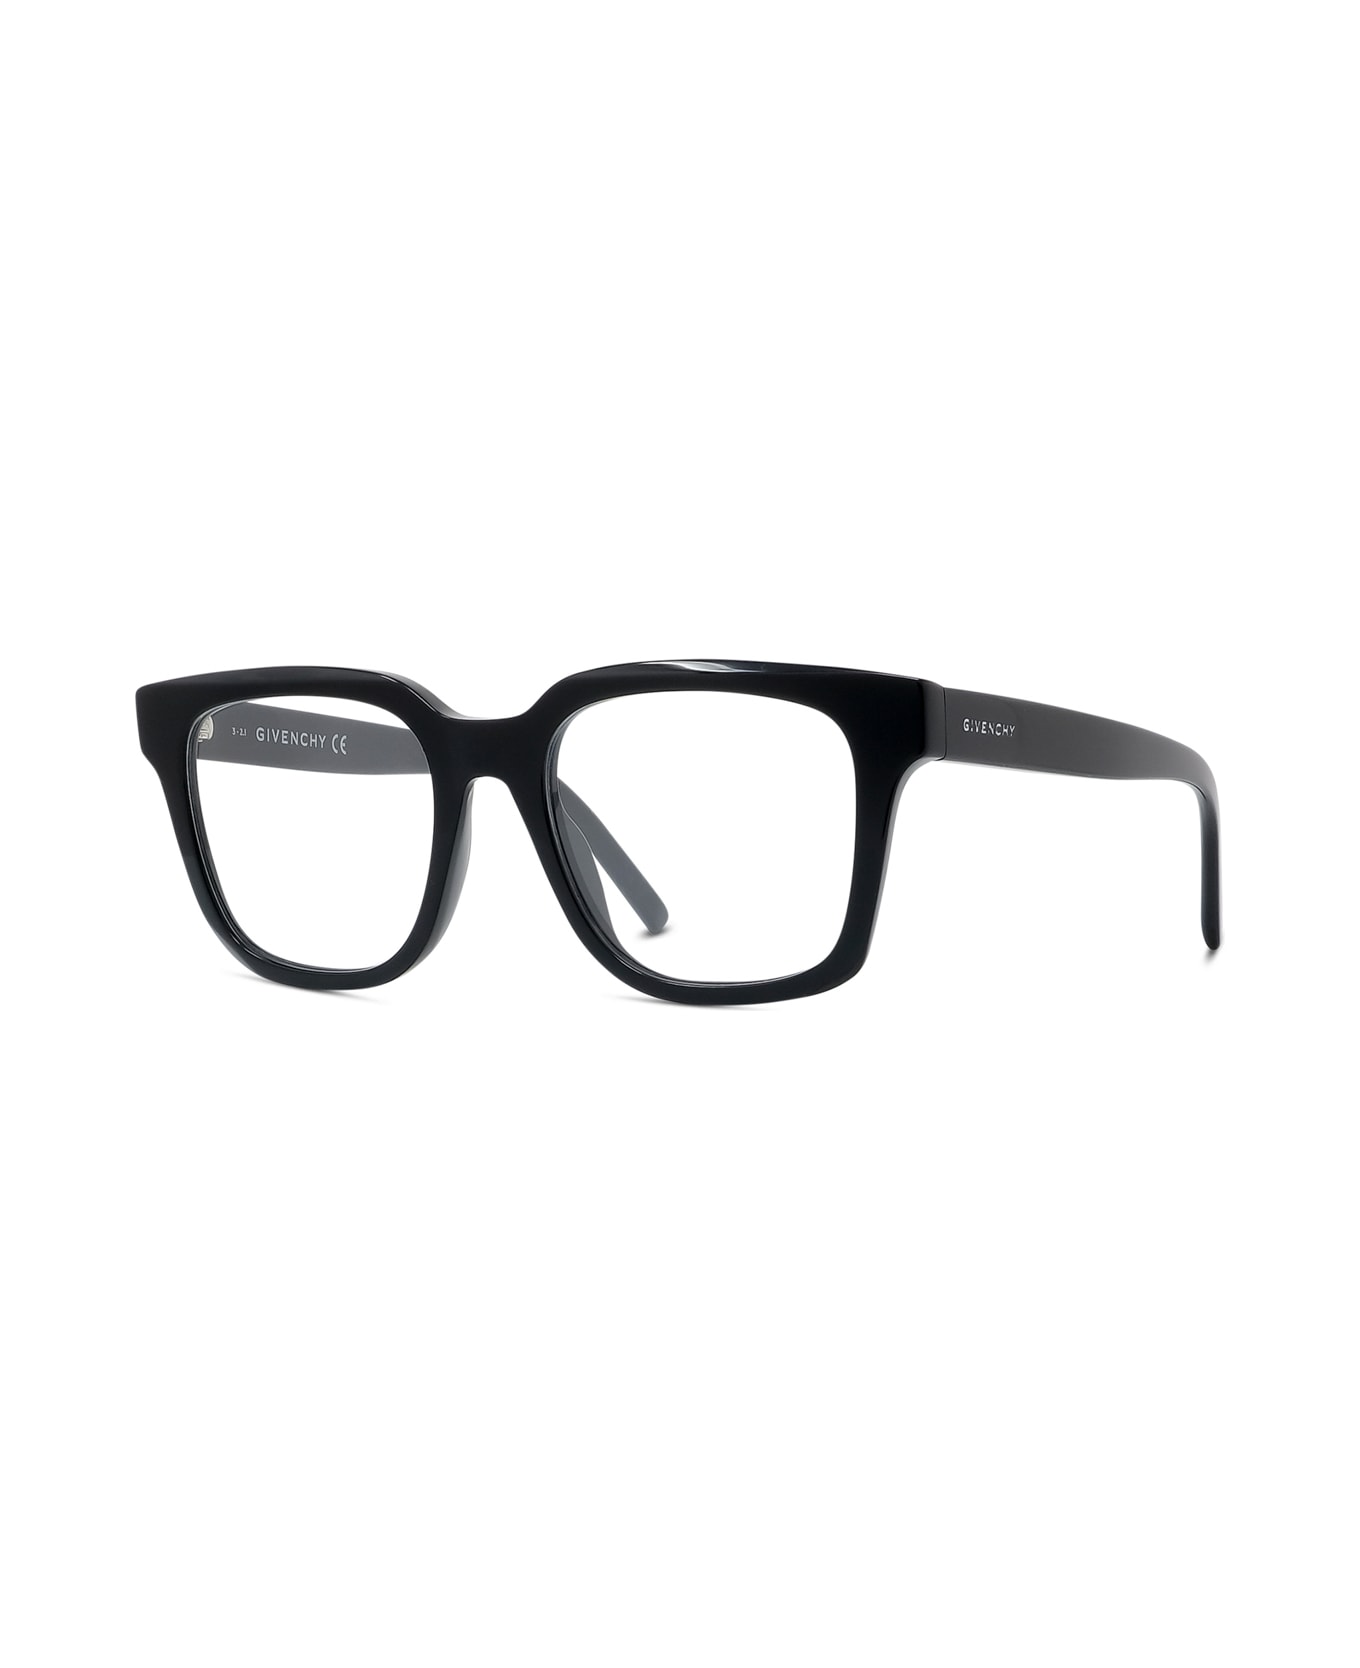 Givenchy balm Eyewear Gv50005i 001 Glasses - Nero